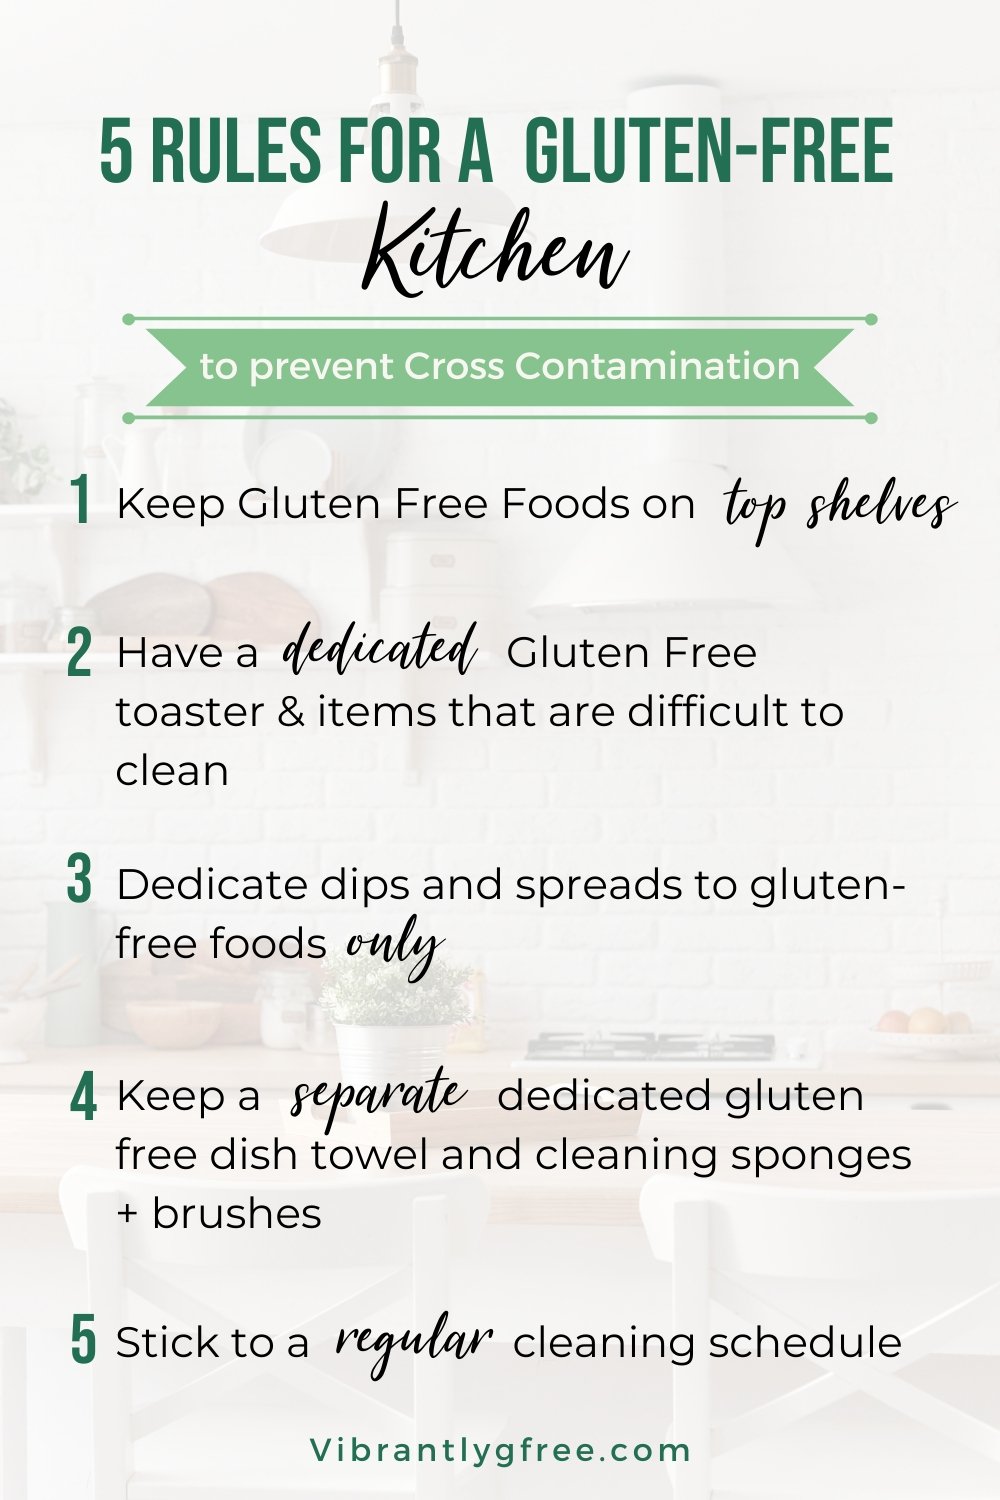 Summary of 5 Gluten Free Kitchen Rules